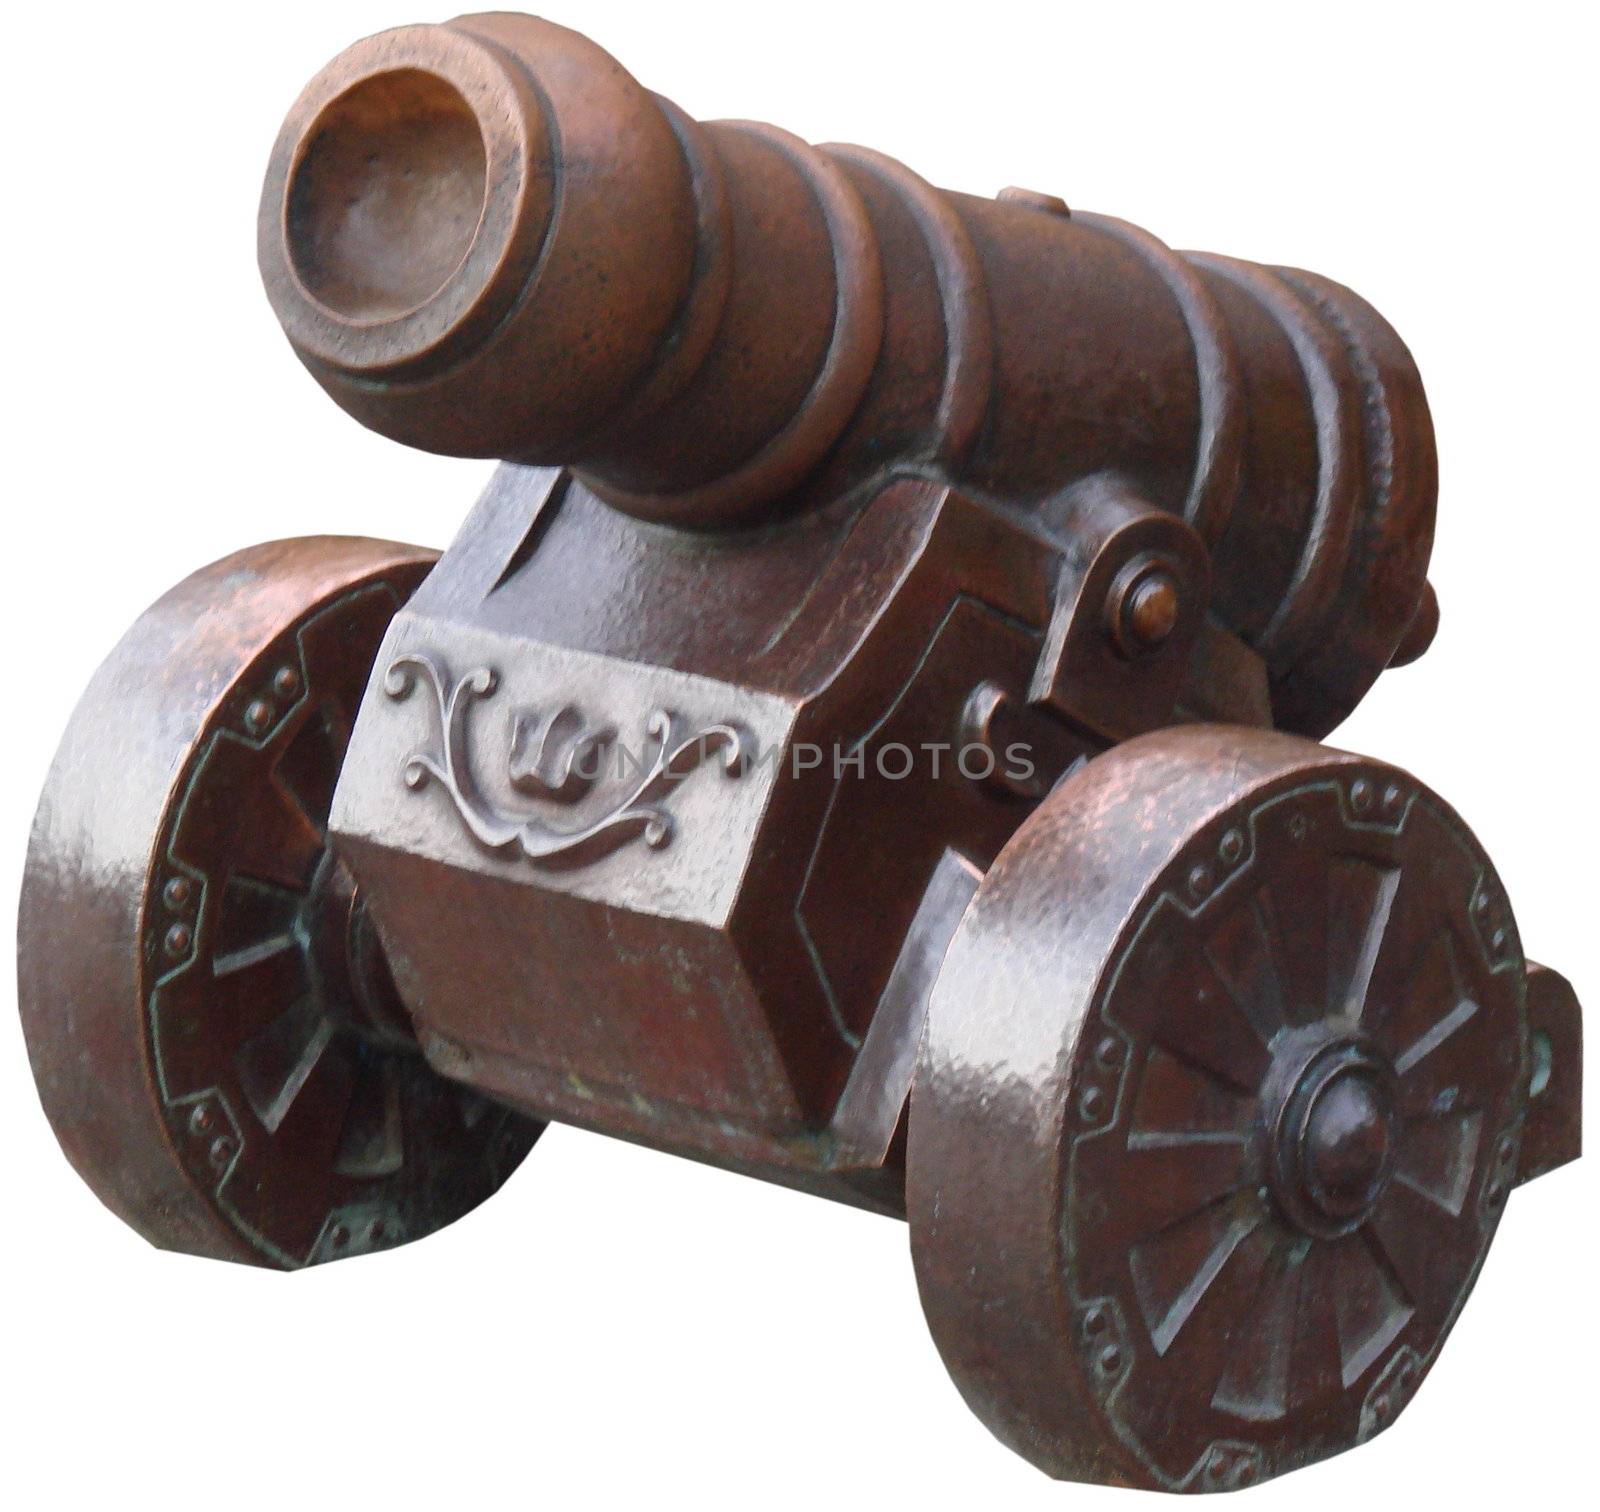 Decorative ancient combat cannon